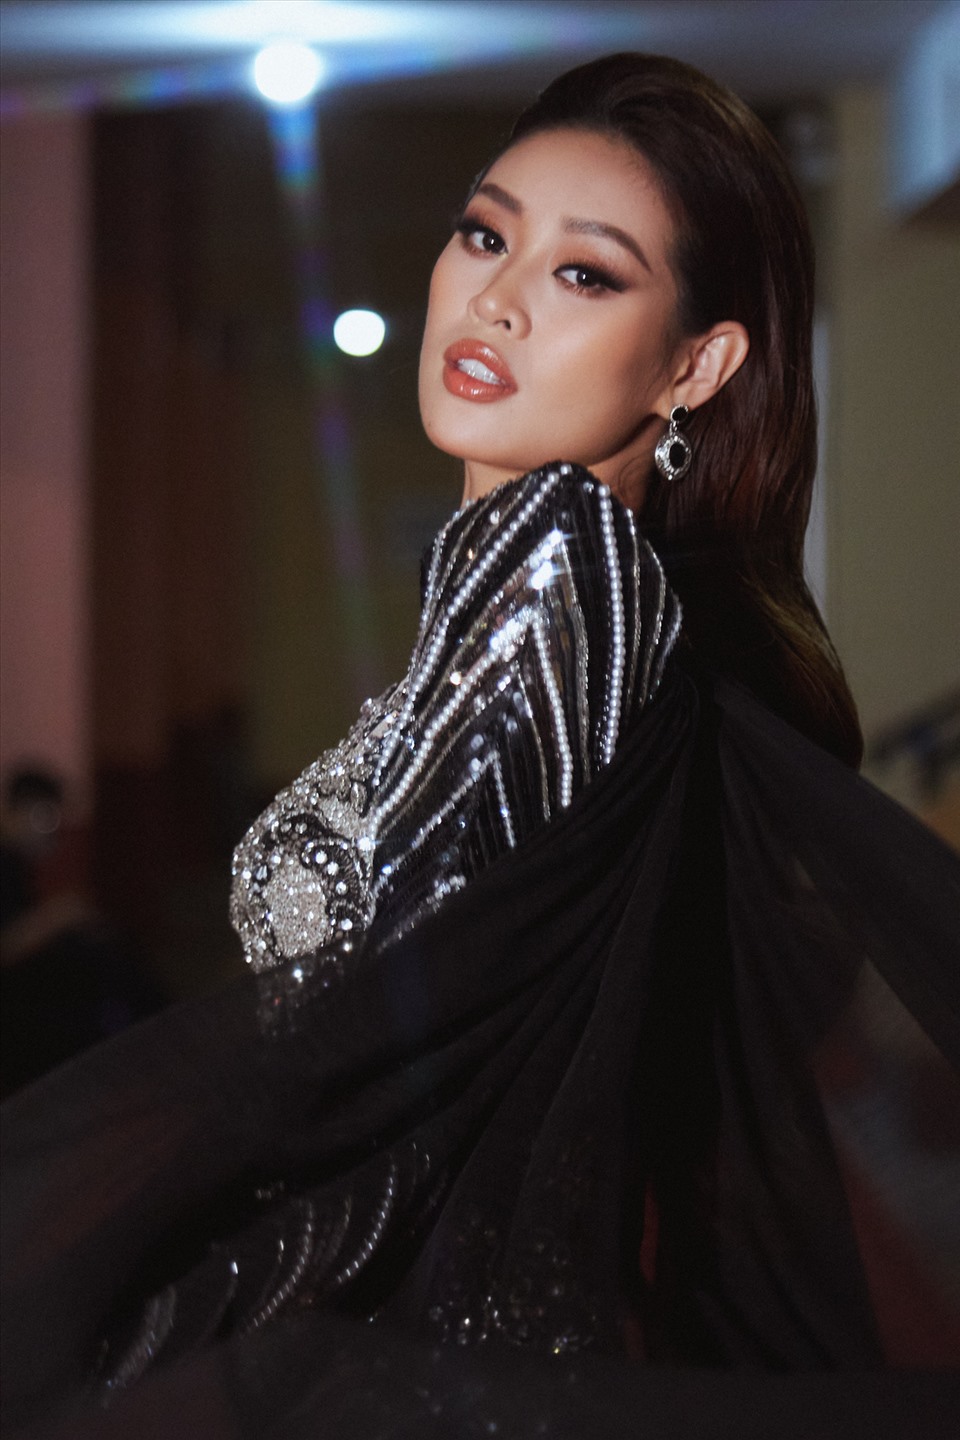 Ngay sau khi kết thúc chương trình, Hoa hậu Khánh Vân tiếp tục trở lại với “Tôi là Hoa hậu Hoàn vũ Việt Nam 2022”, cùng thí sinh chuẩn bị cho đêm diễn thời trang vào ngày 23.4 tới. Ảnh: Sang Đào.